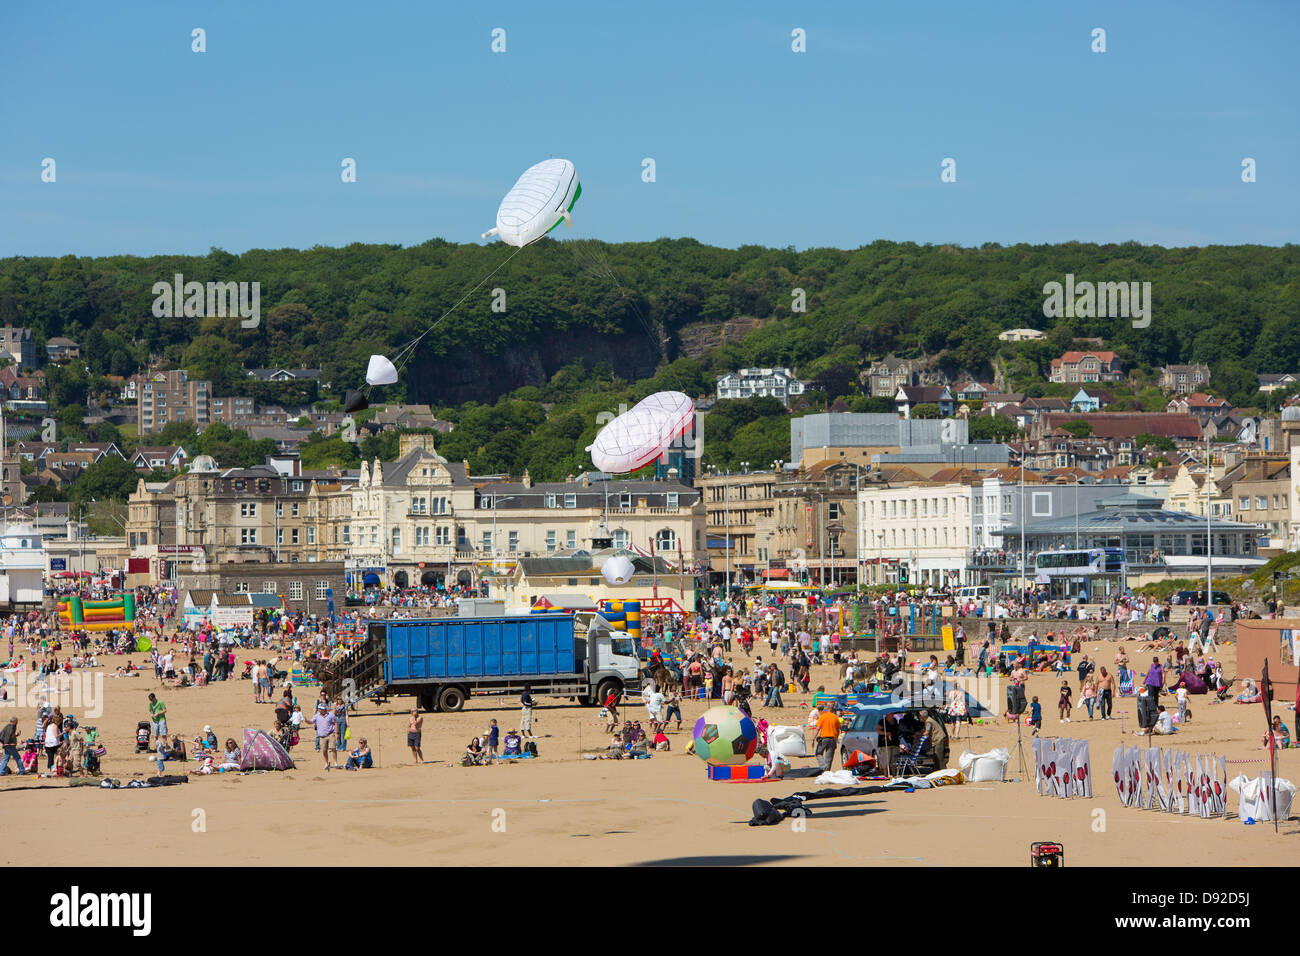 Bunte künstlerische Kites origineller Designs zogen beim ersten Weston Kite Festival Menschenmassen an Stockfoto